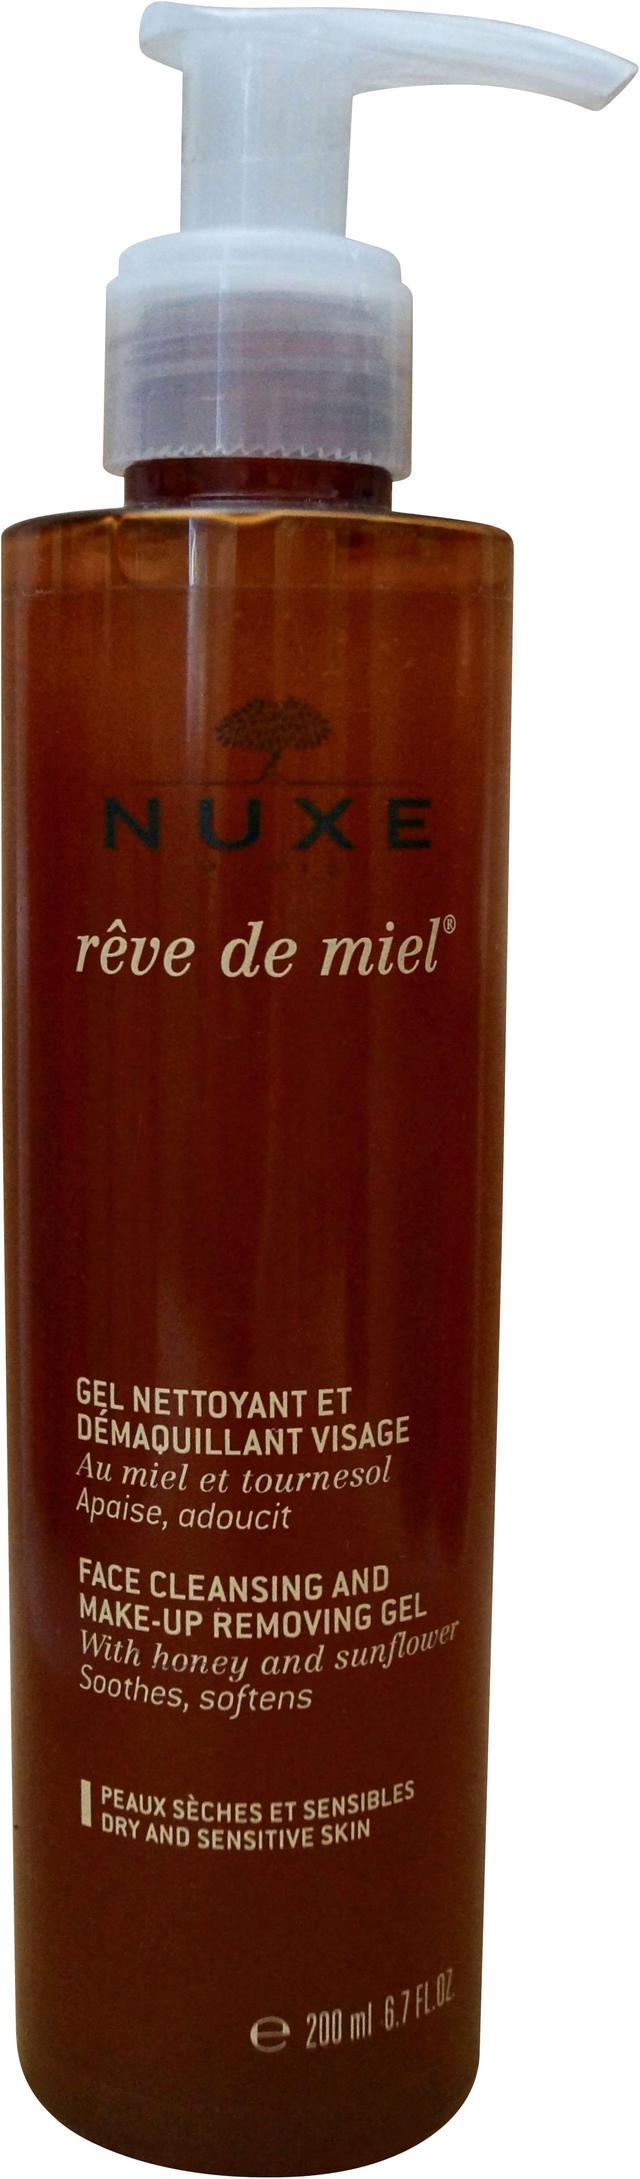 Face Reve Removing Makeup Nuxe De 200ml/6.7oz Miel & Cleansing -